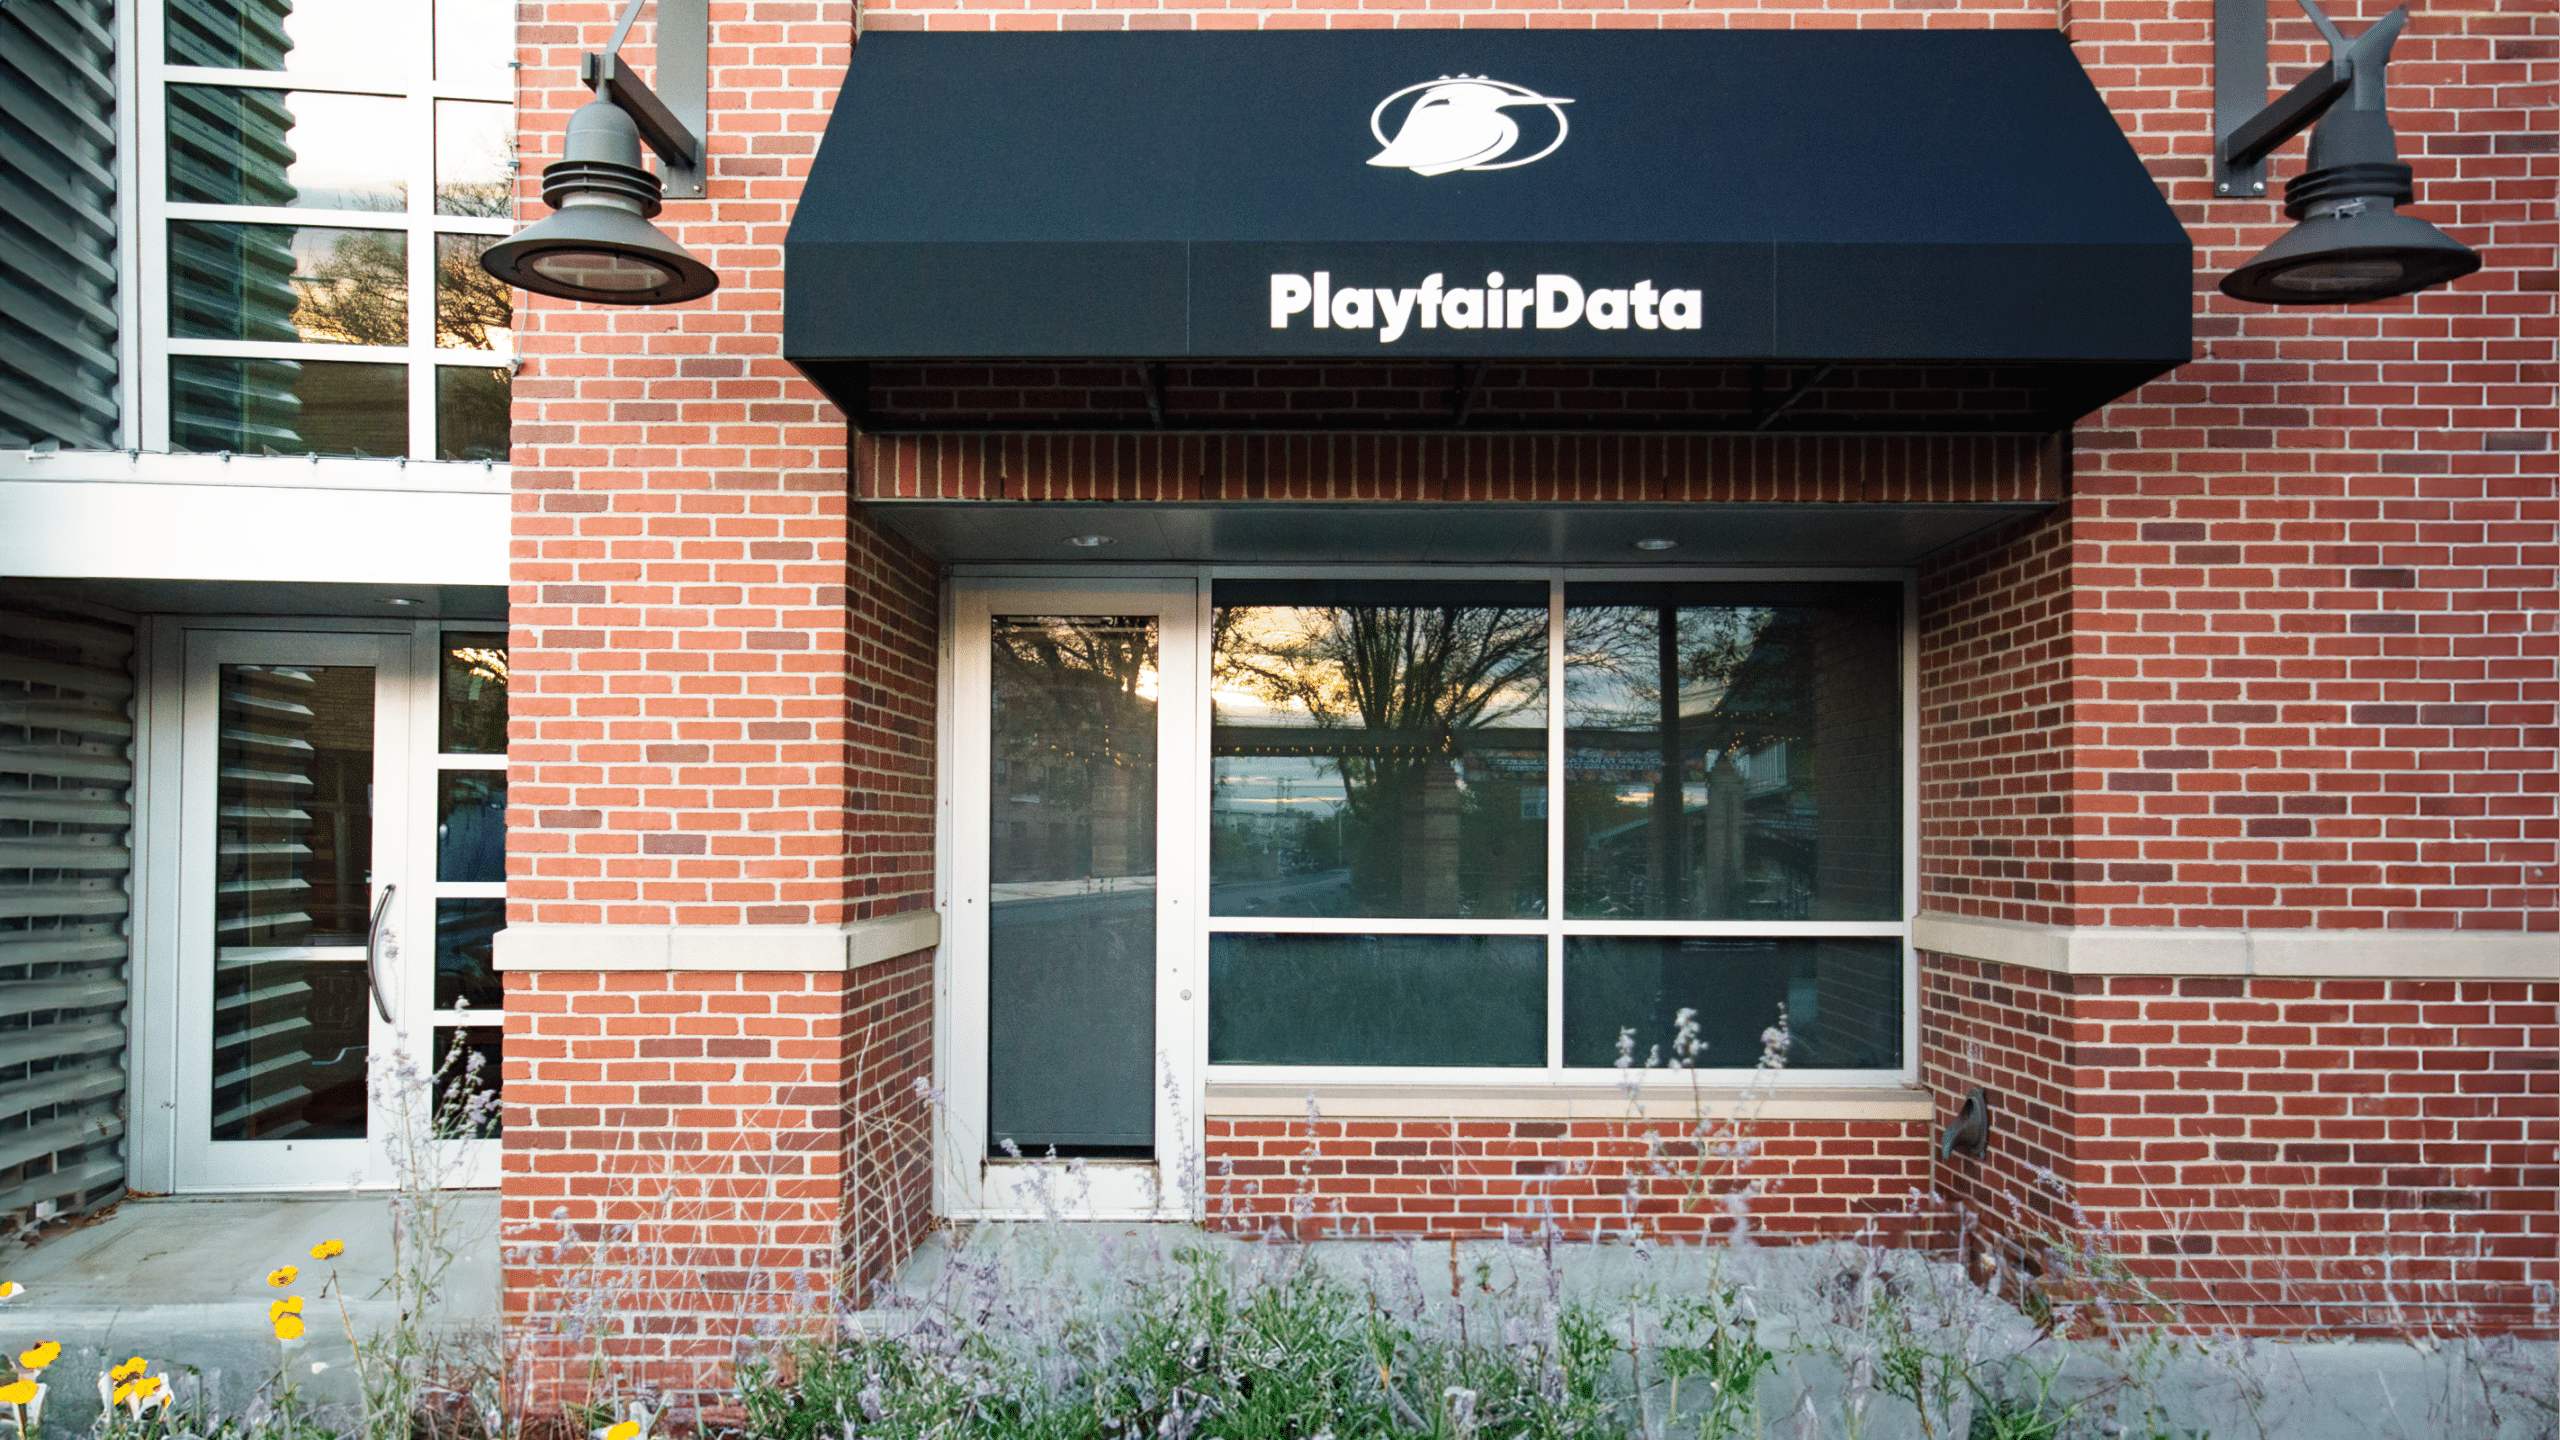 Kansas City Office Exterior with Playfair Data Awning